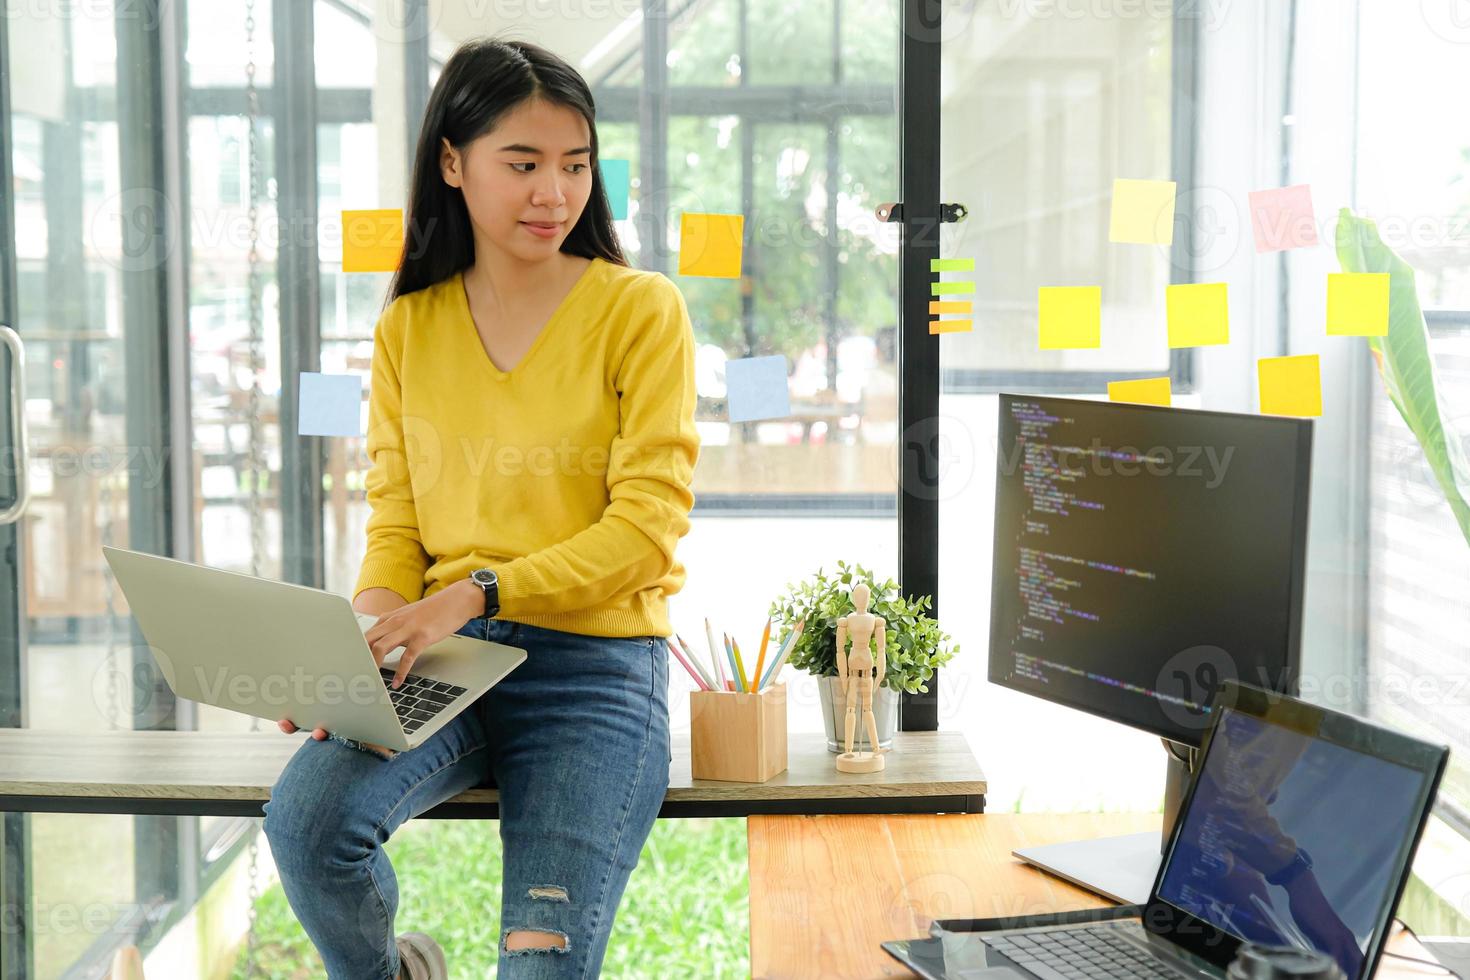 programadora asiática para camisa amarilla se sienta en el estante y coloca la computadora portátil en la pierna. Ella miró la pantalla de la computadora en la mesa y reflexionó. foto